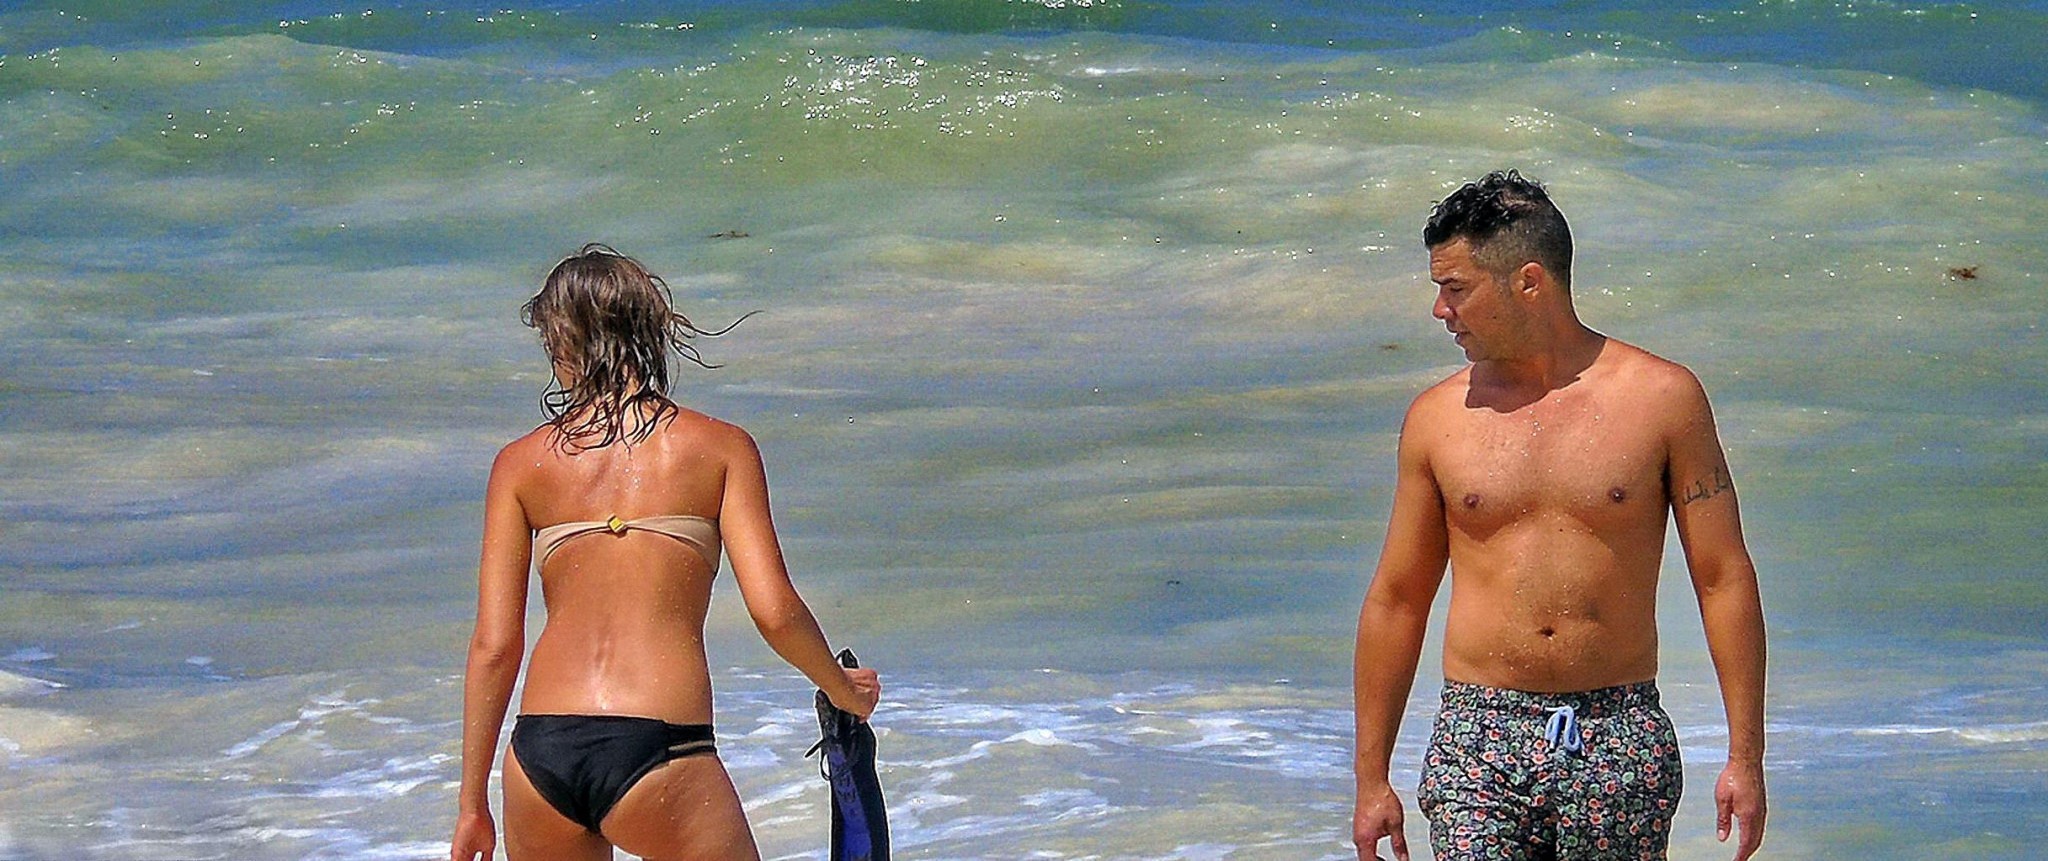 Jessica alba con un bikini sin tirantes en una playa de mexico
 #75191652